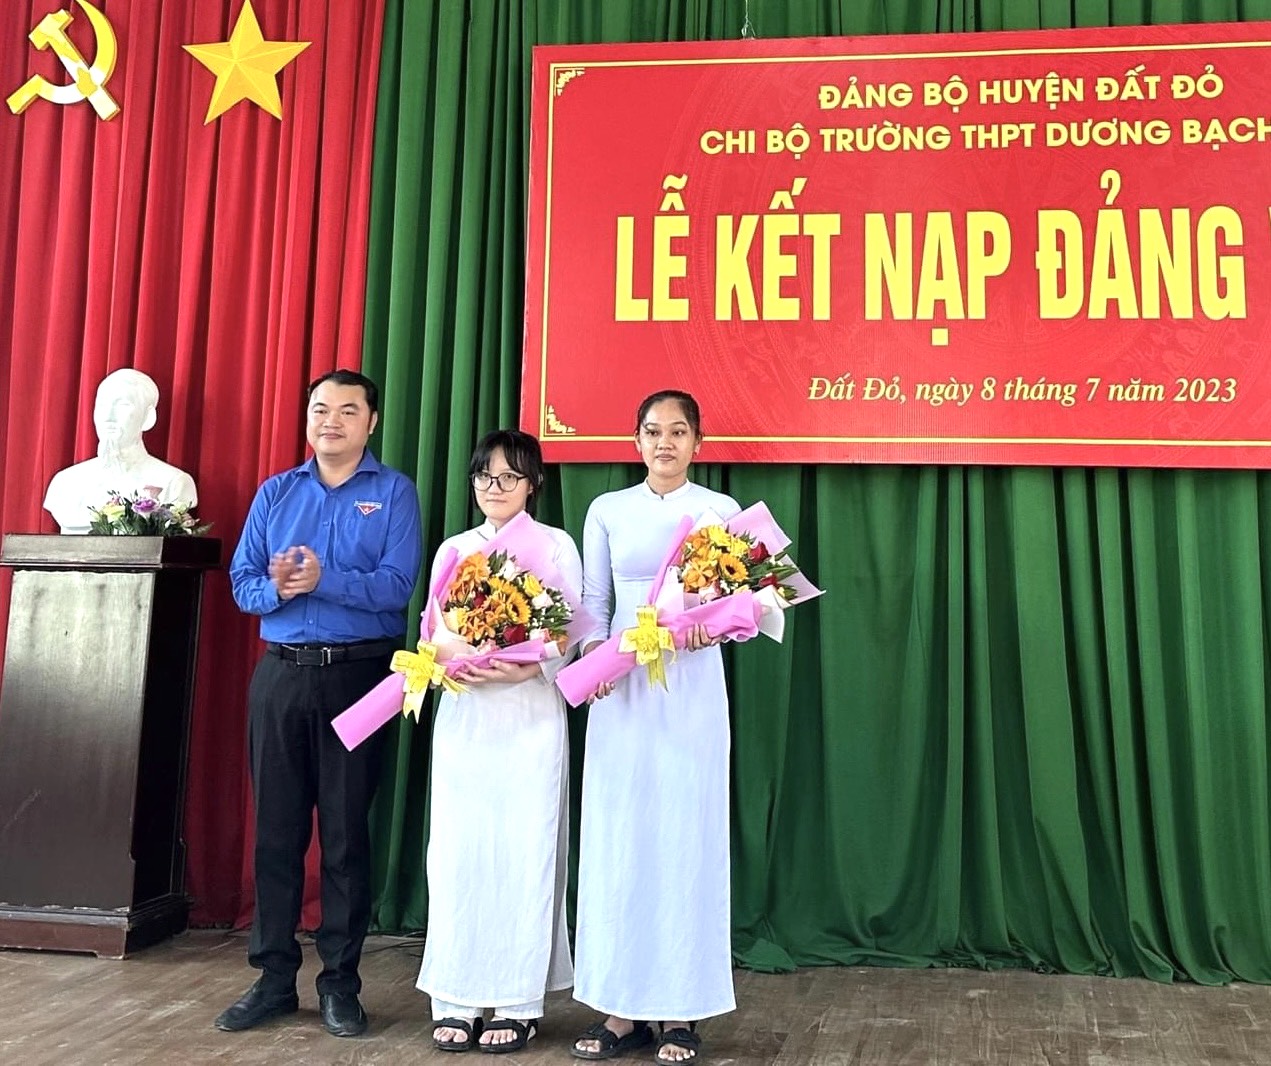 Lễ kết nạp Đảng của HS ưu tú tại Chi bộ Trường Dương Bạch Mai  (huyện Đất Đỏ) ngày 8/7/2023.